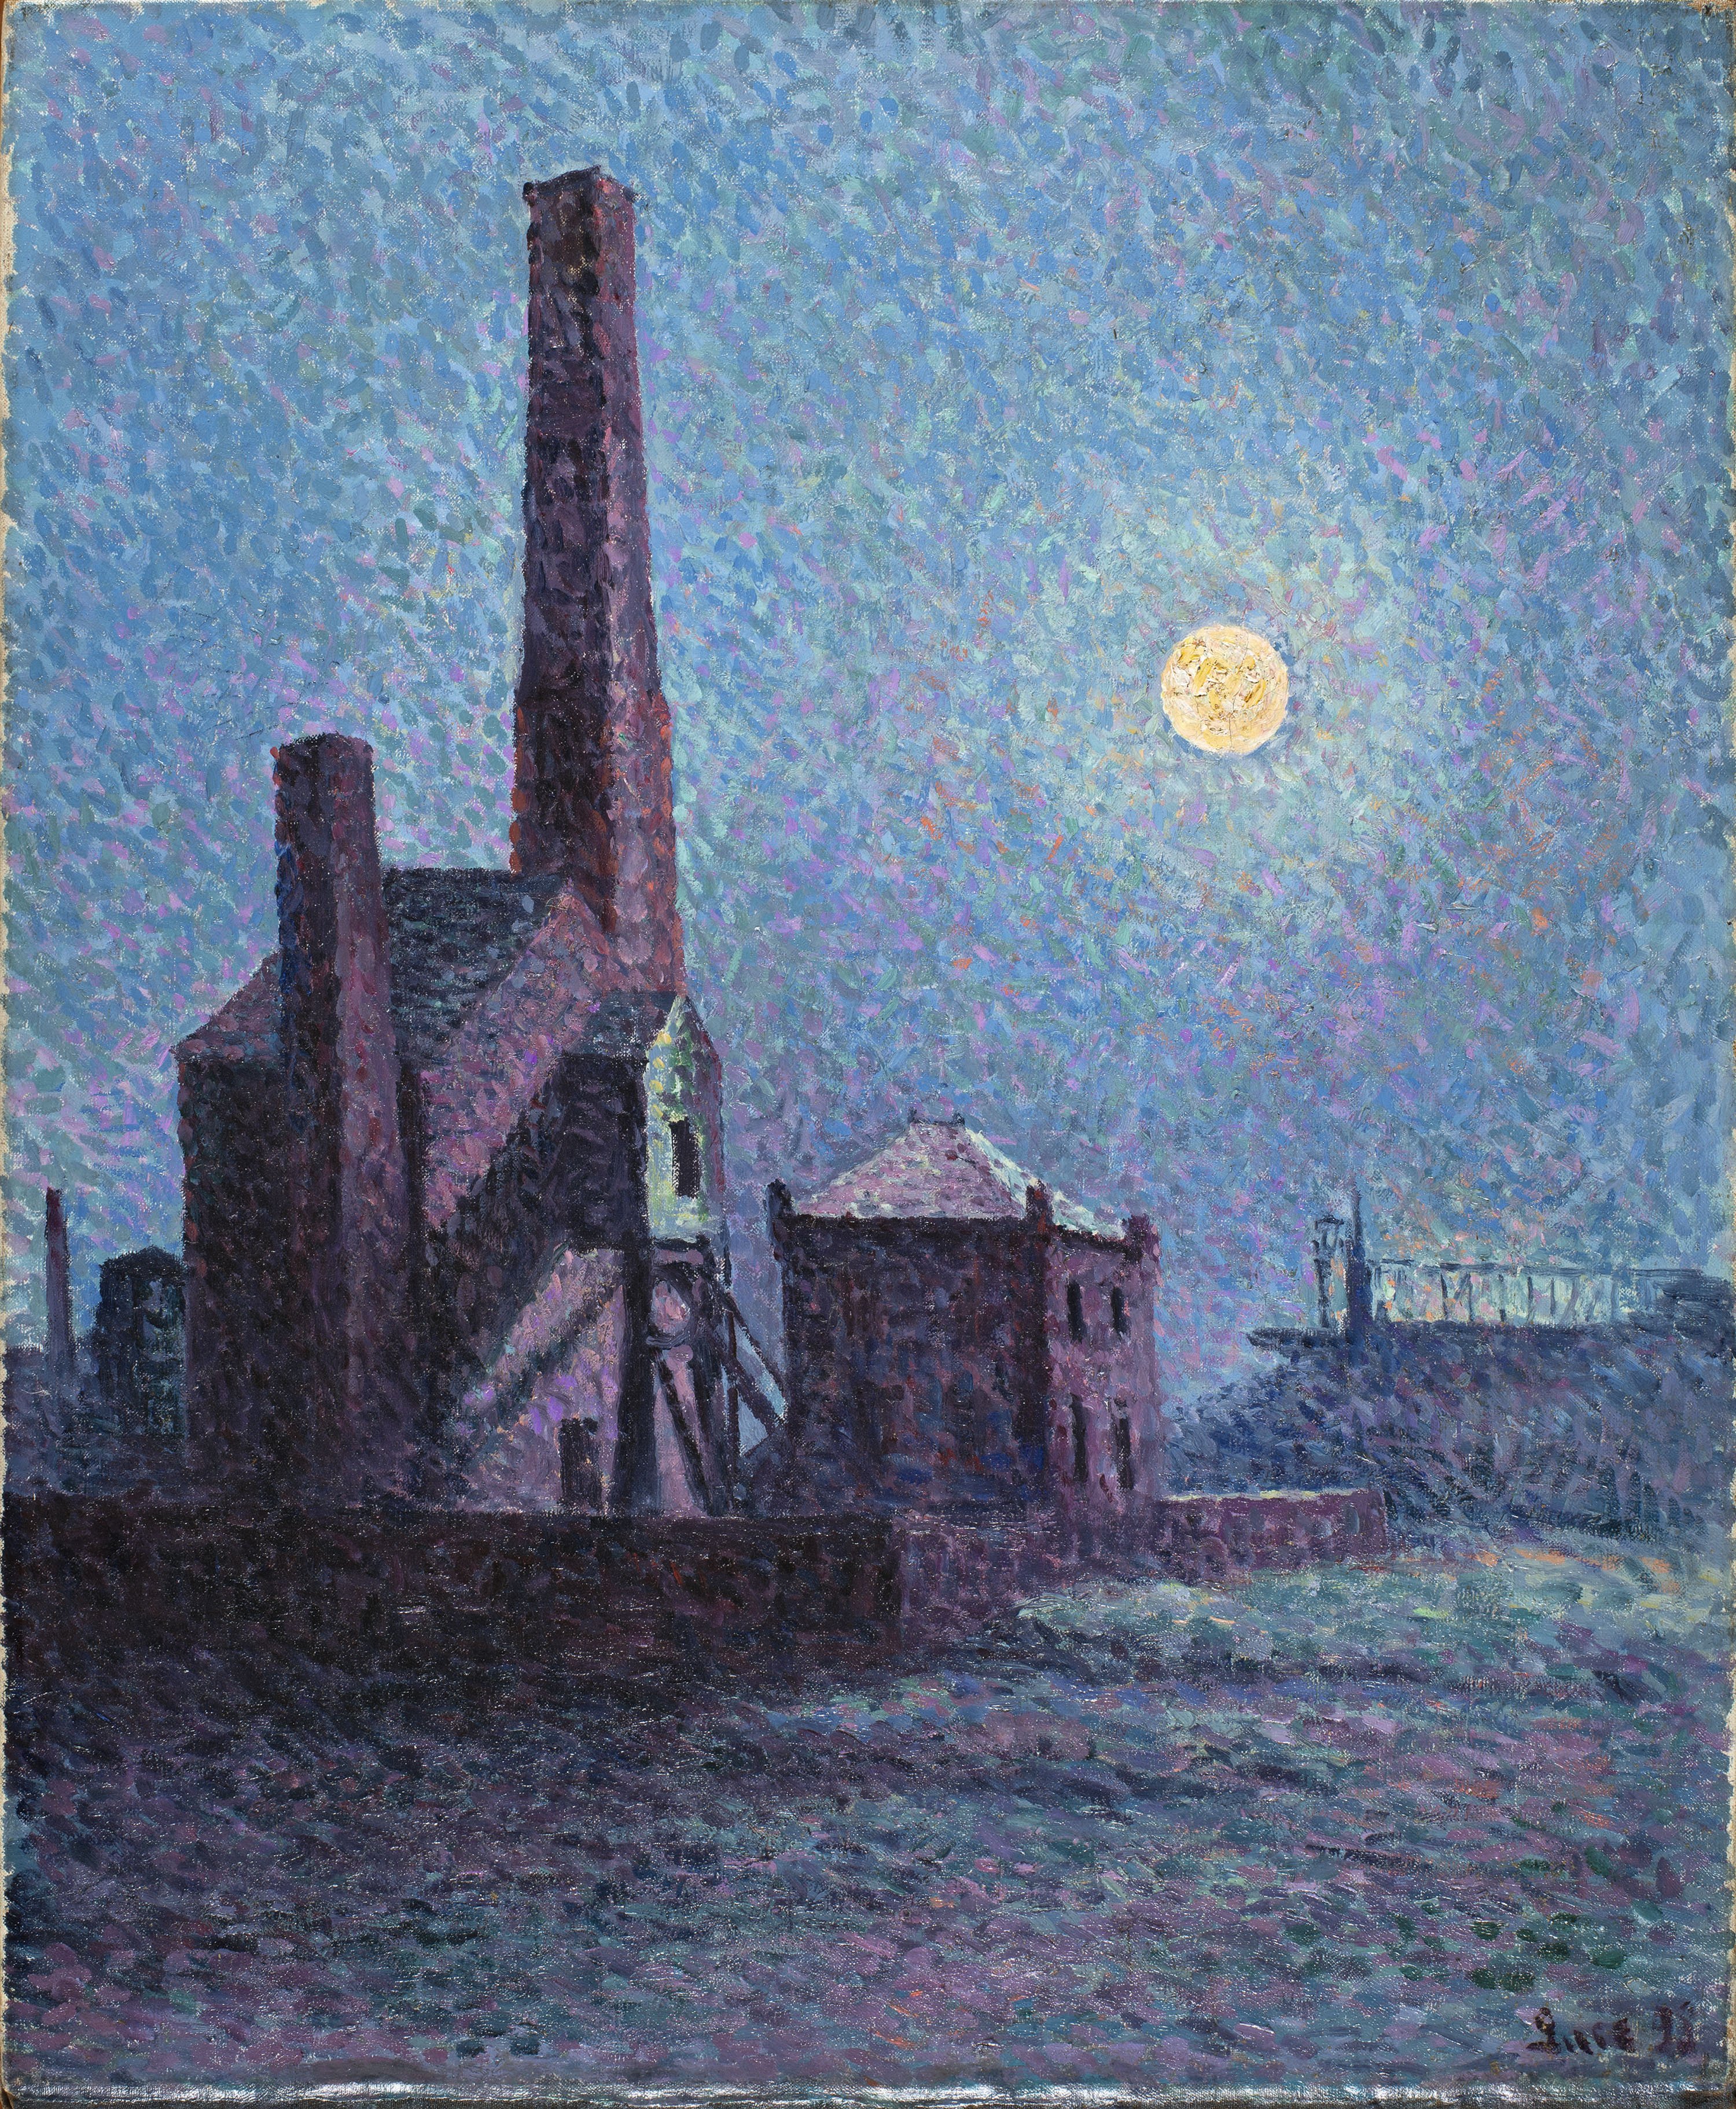 Factory in the Moonlight. Fábrica a la luz de la luna, 1898